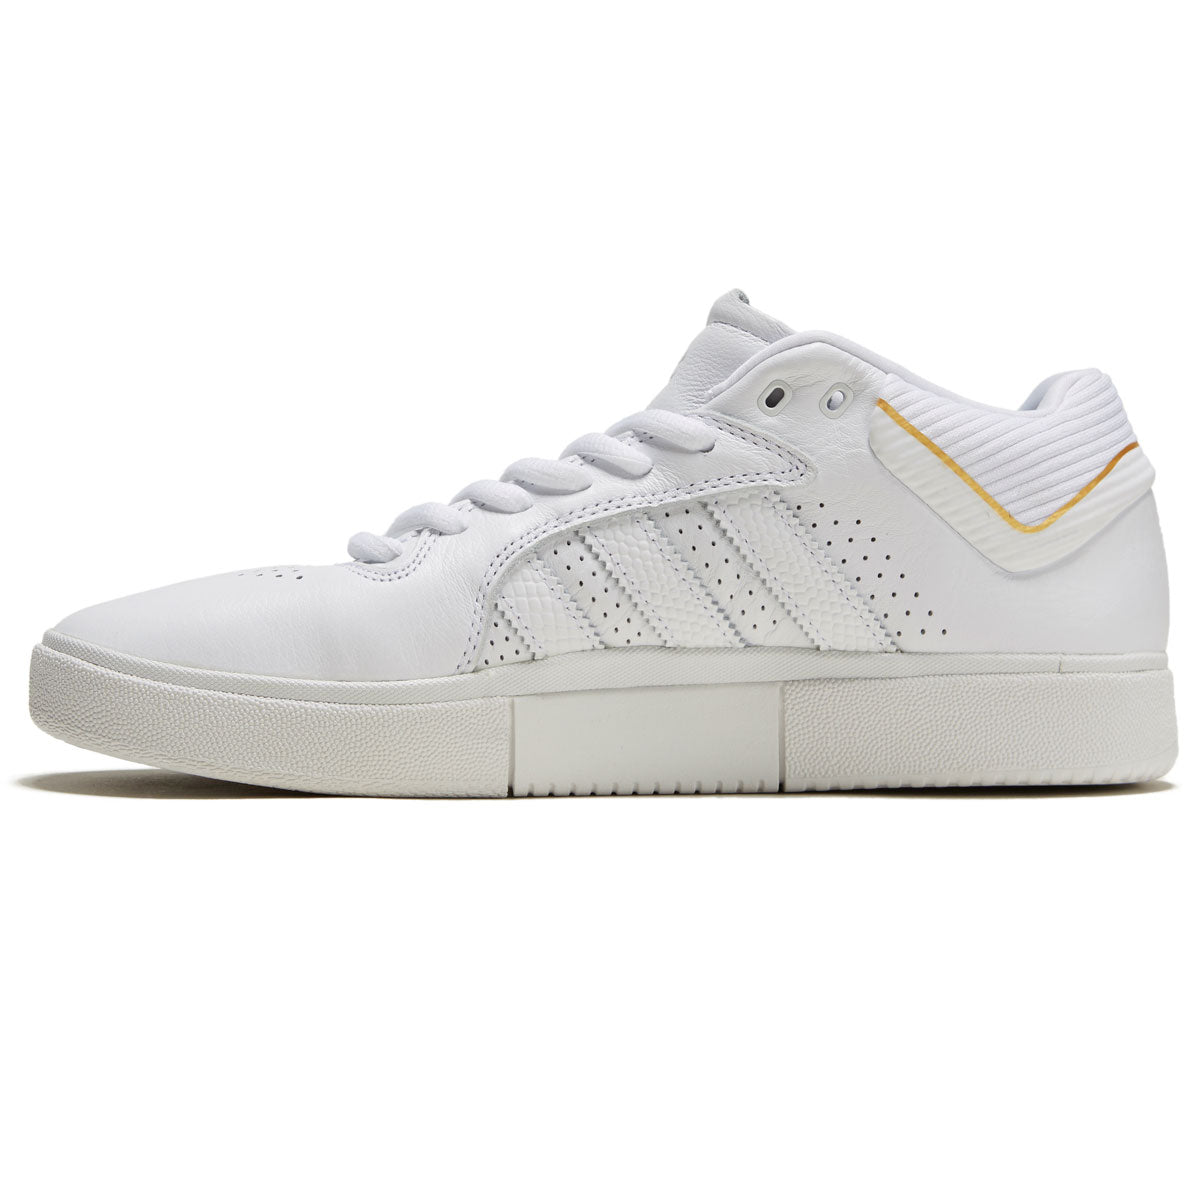 Adidas Tyshawn Shoes - White/White/Gold Metallic image 2